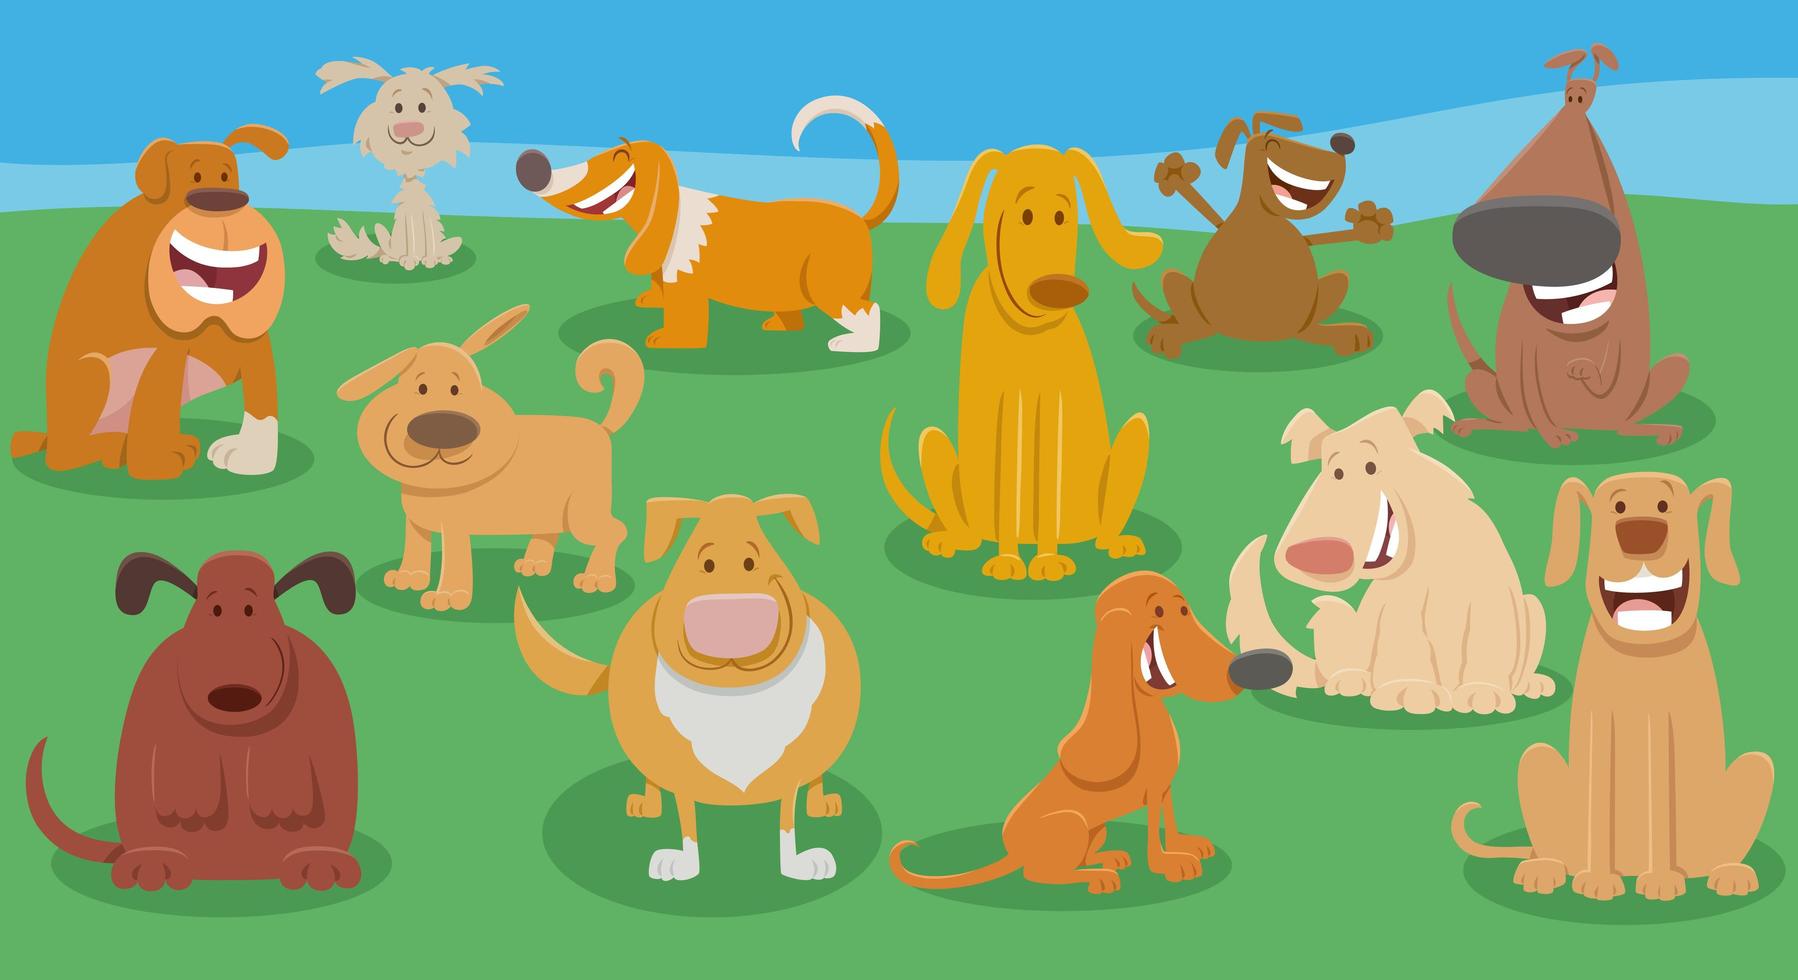 grupo de personagens animais de desenho animado de cães engraçados vetor